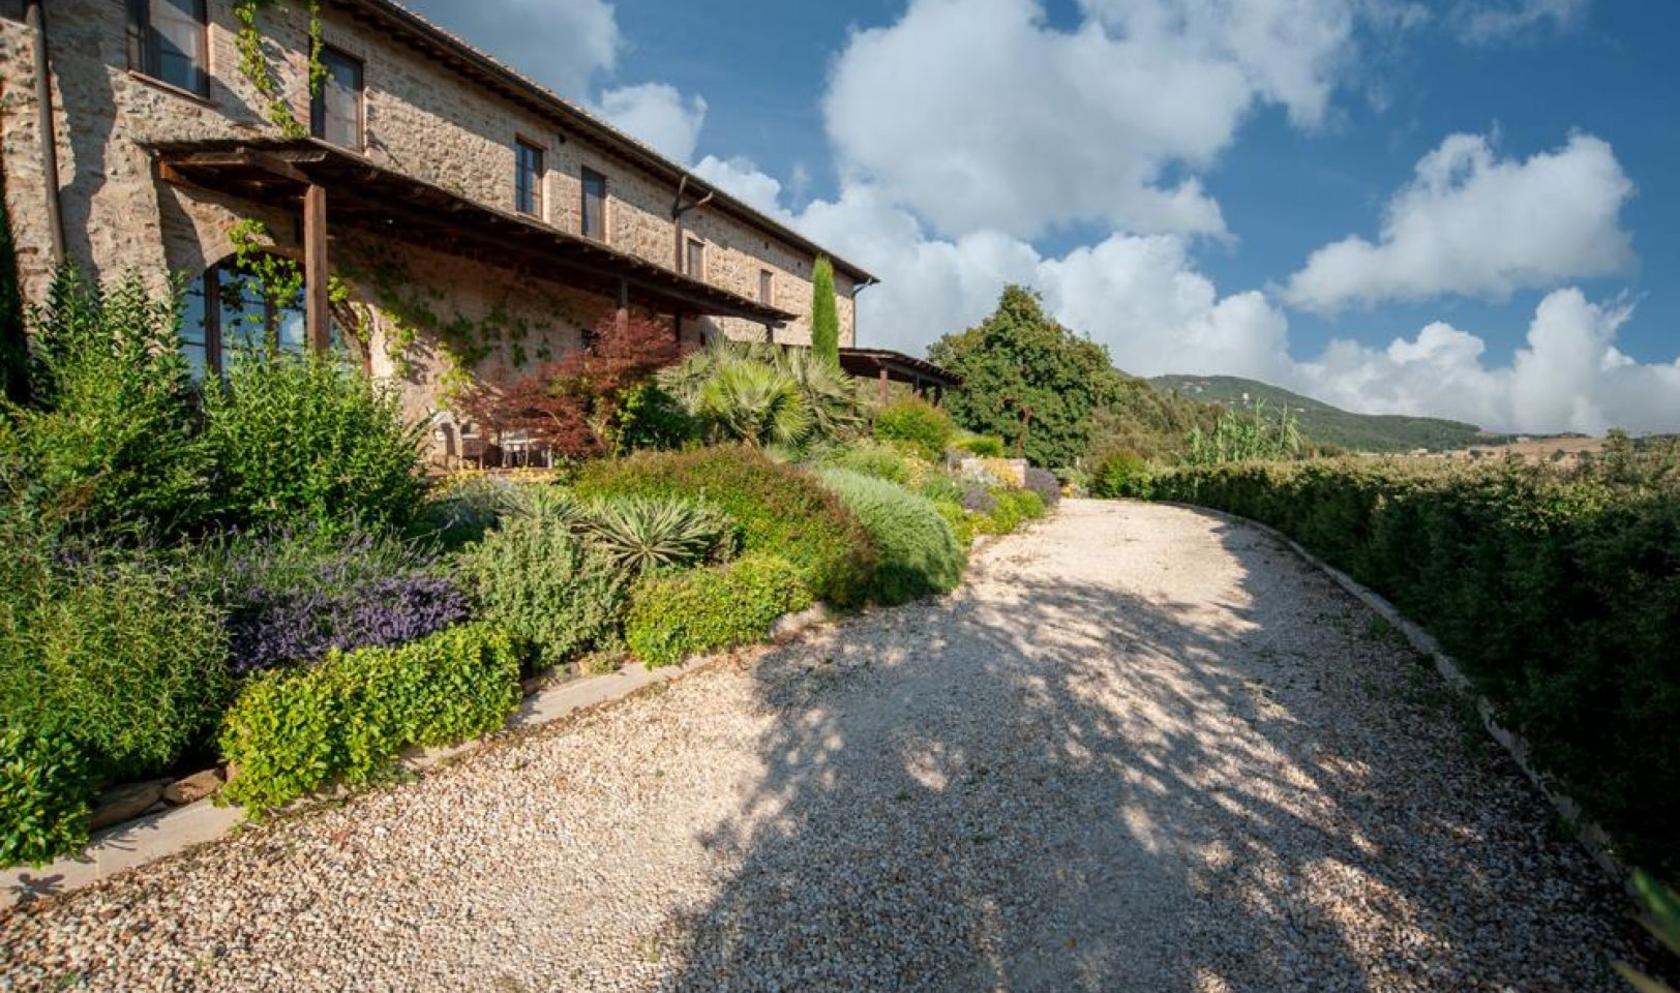 Toscana Immobiliare - Splendido podere con 10 ettari di terreno in vendita nel cuore della Toscana